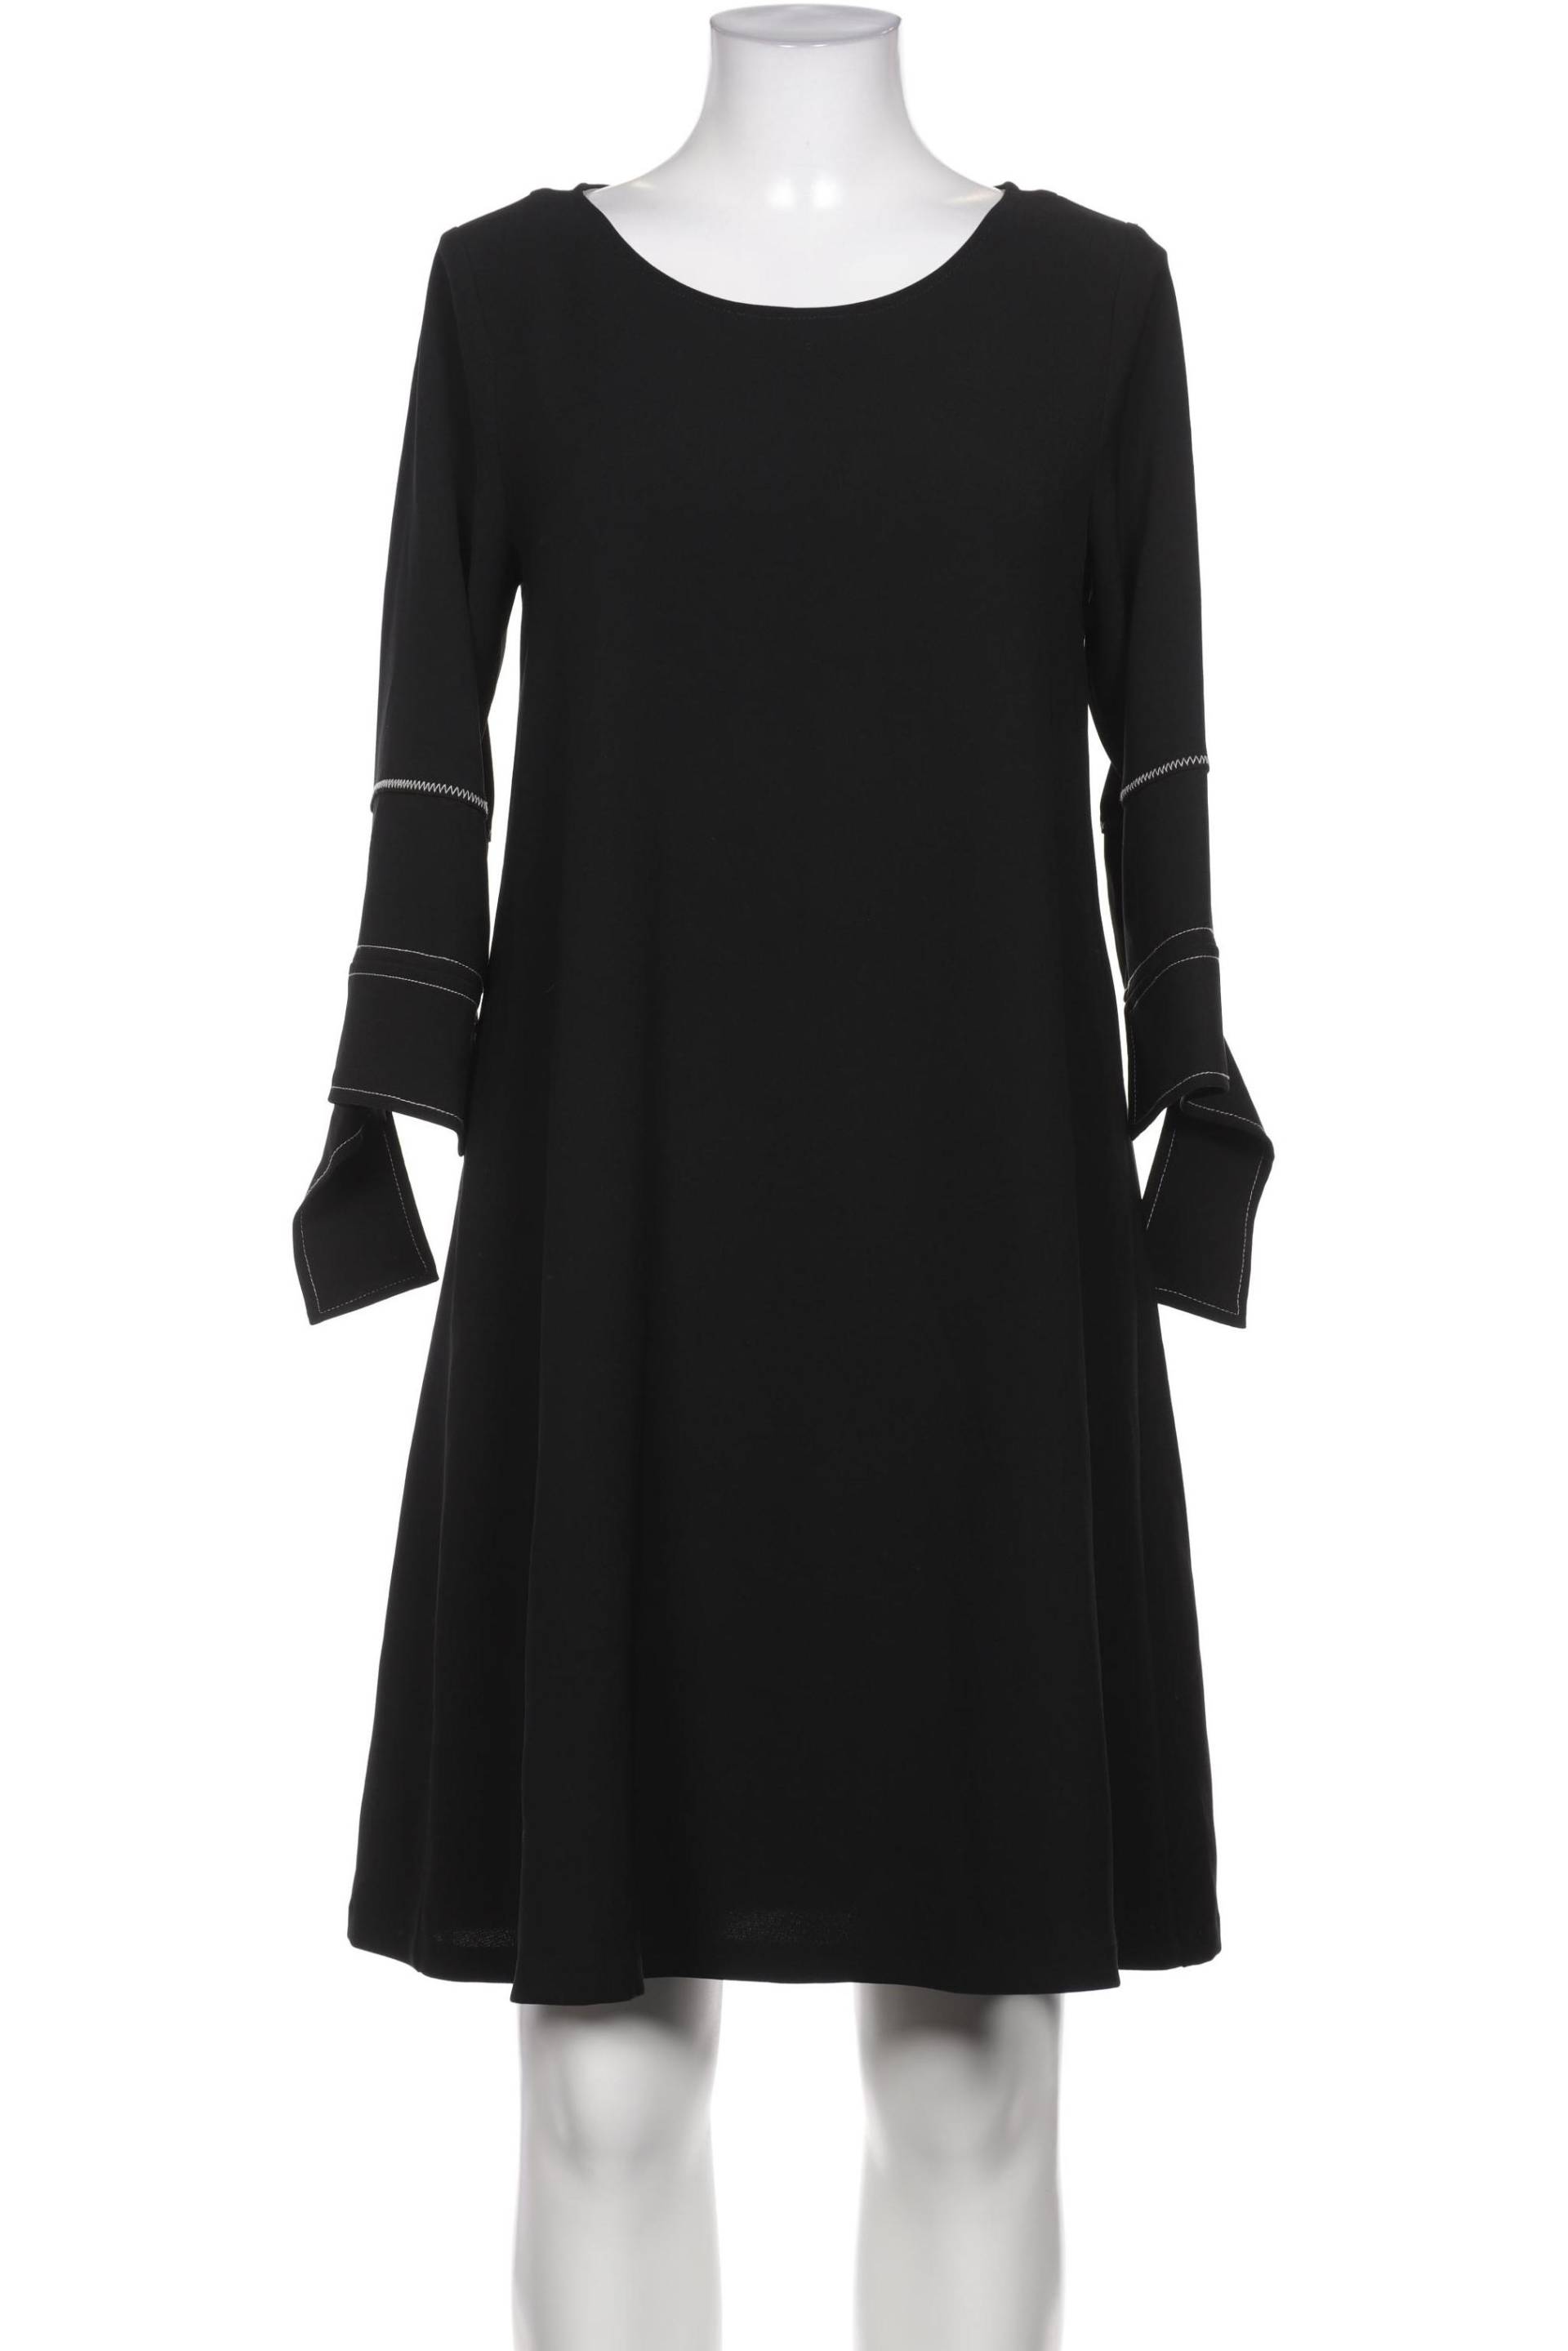 BEATRICE B Damen Kleid, schwarz von BEATRICE B